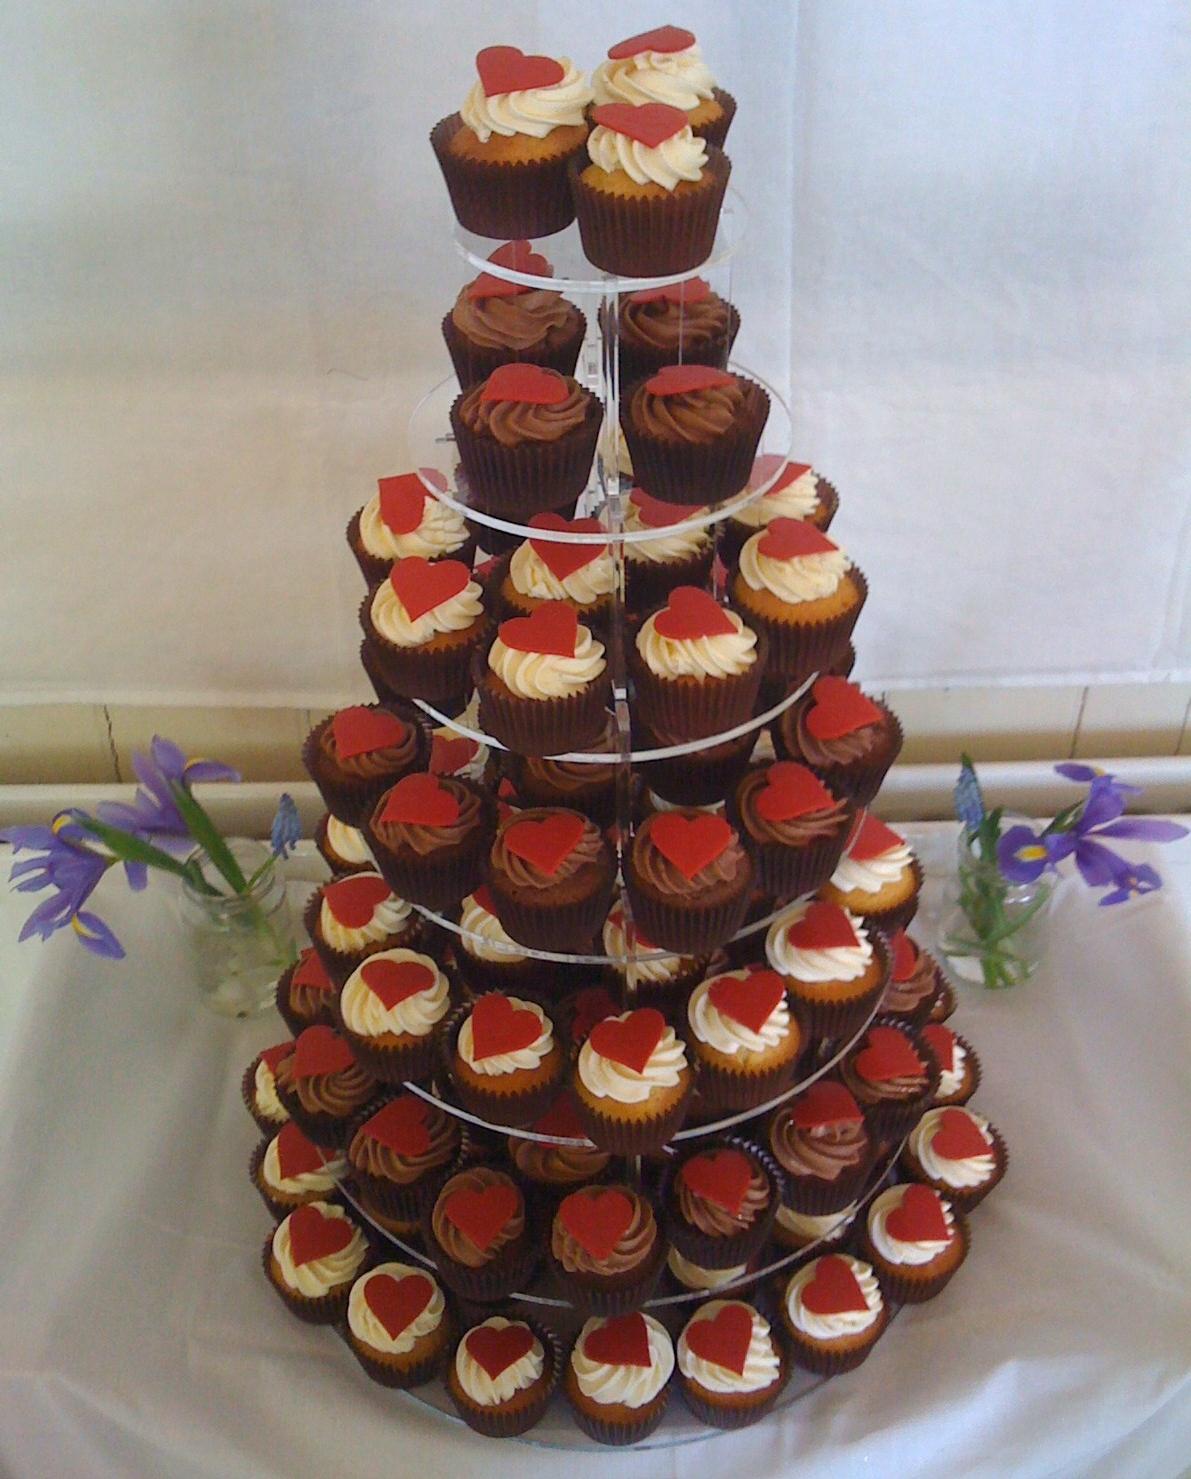 to make wedding cupcakes,